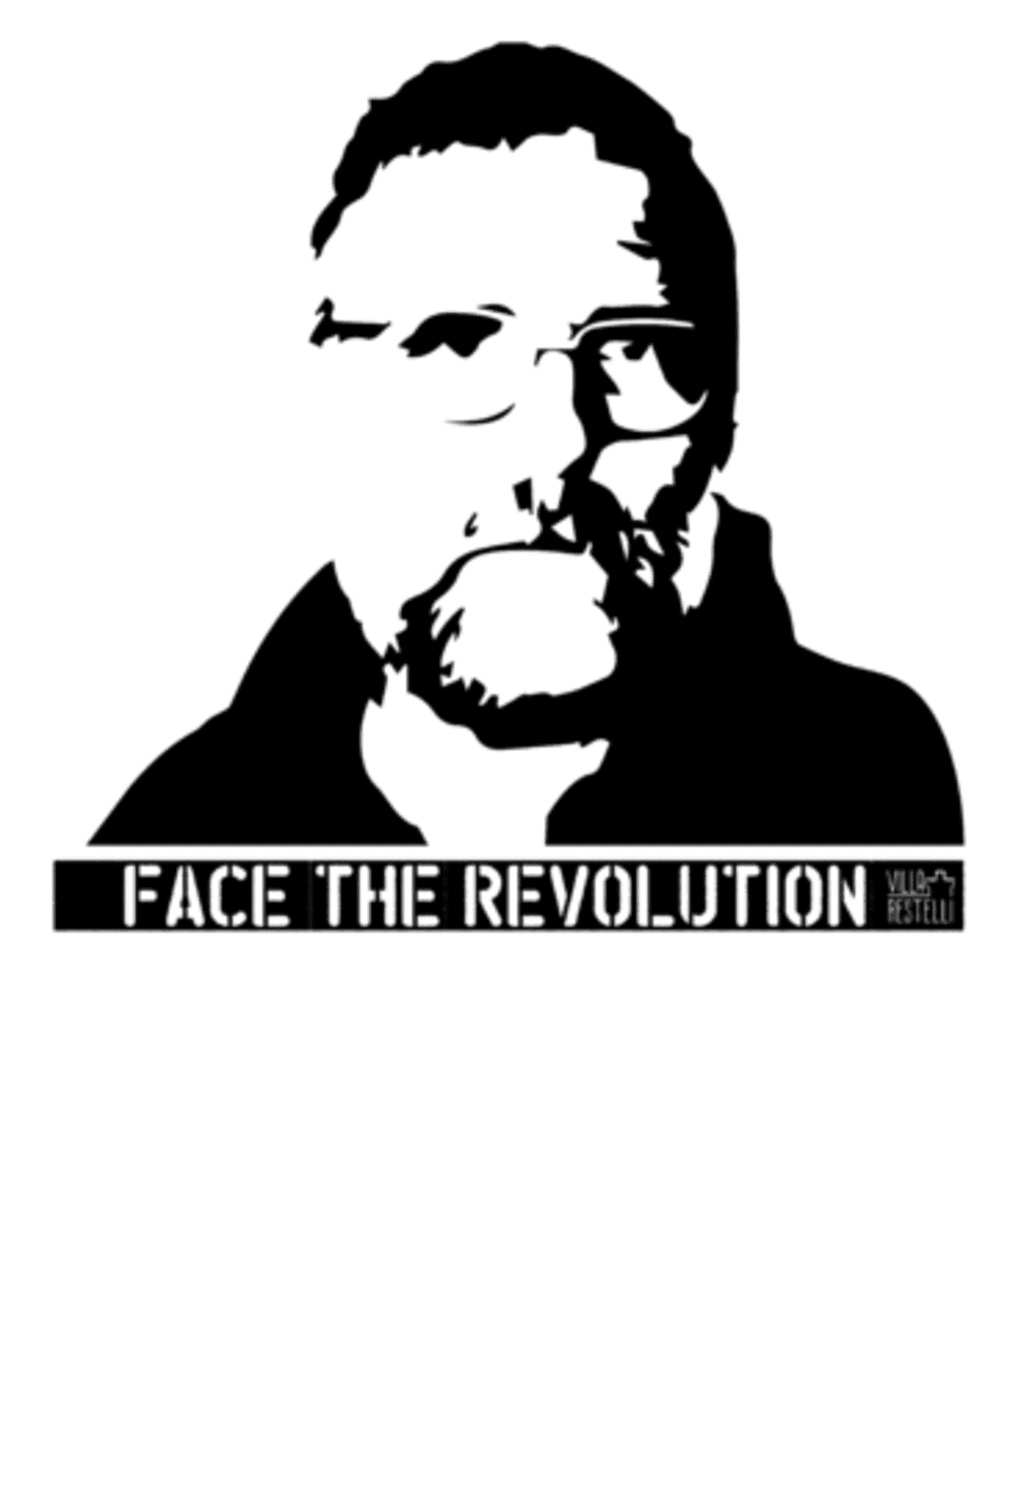 *FACE THE REVOLUTION* - Padre Paolo Dall’Oglio